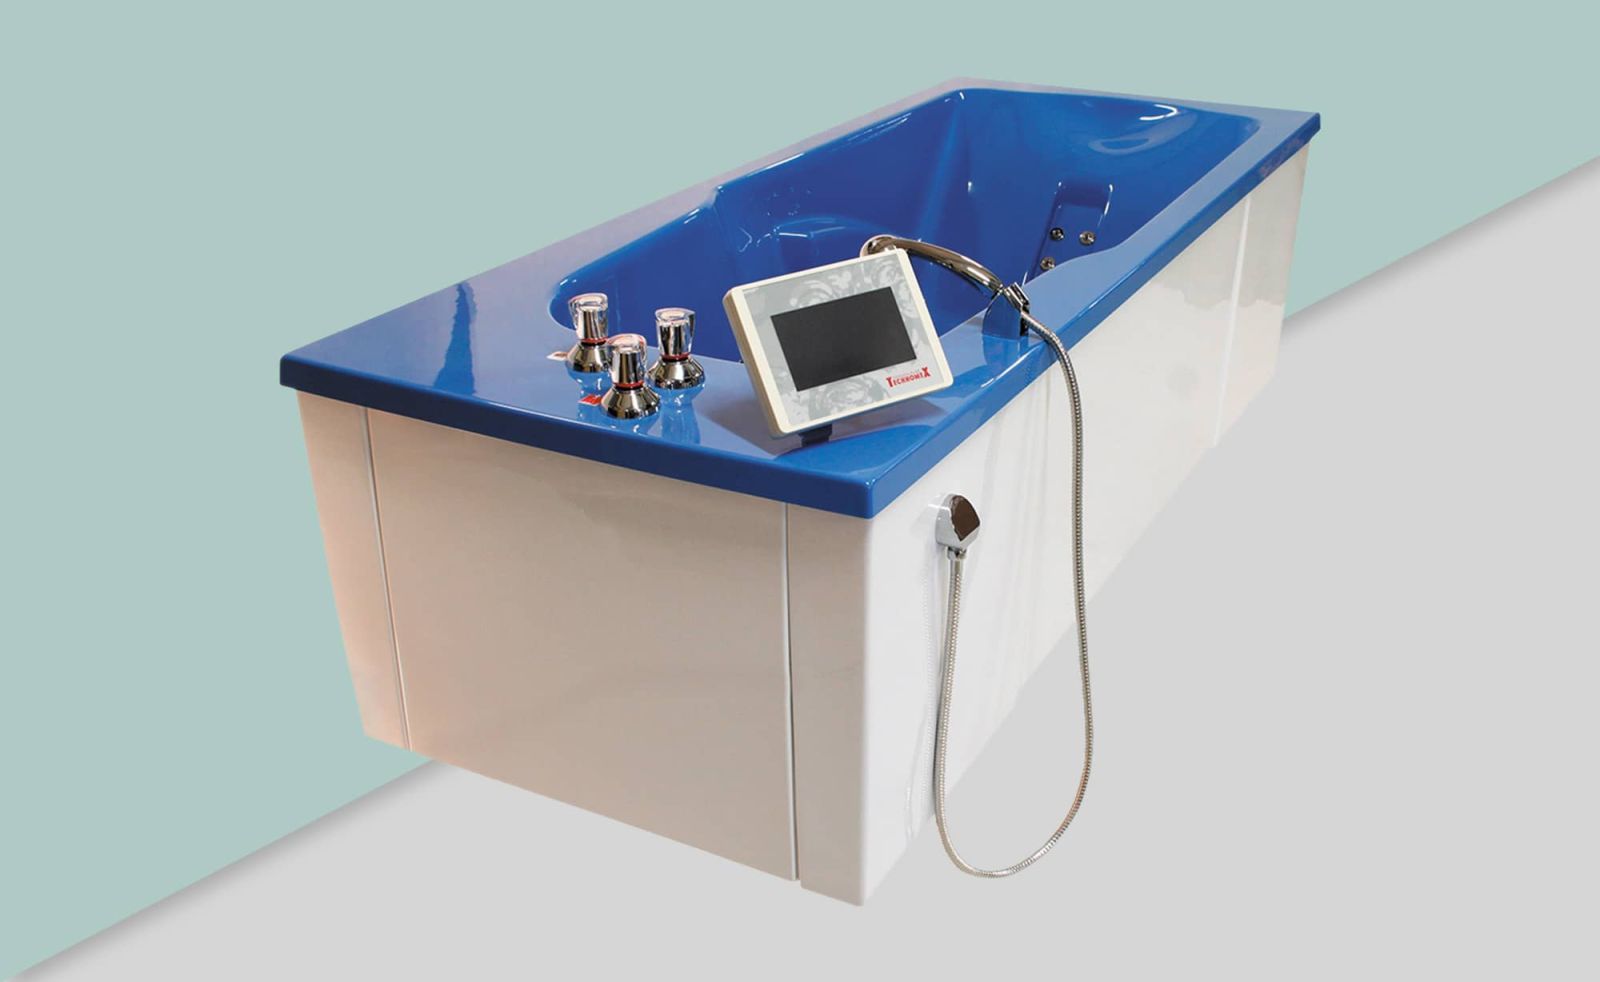 Ванна для автоматического гидромассажа массажа и жемчужных процедур T-UWM Automat (Technomex, Польша)